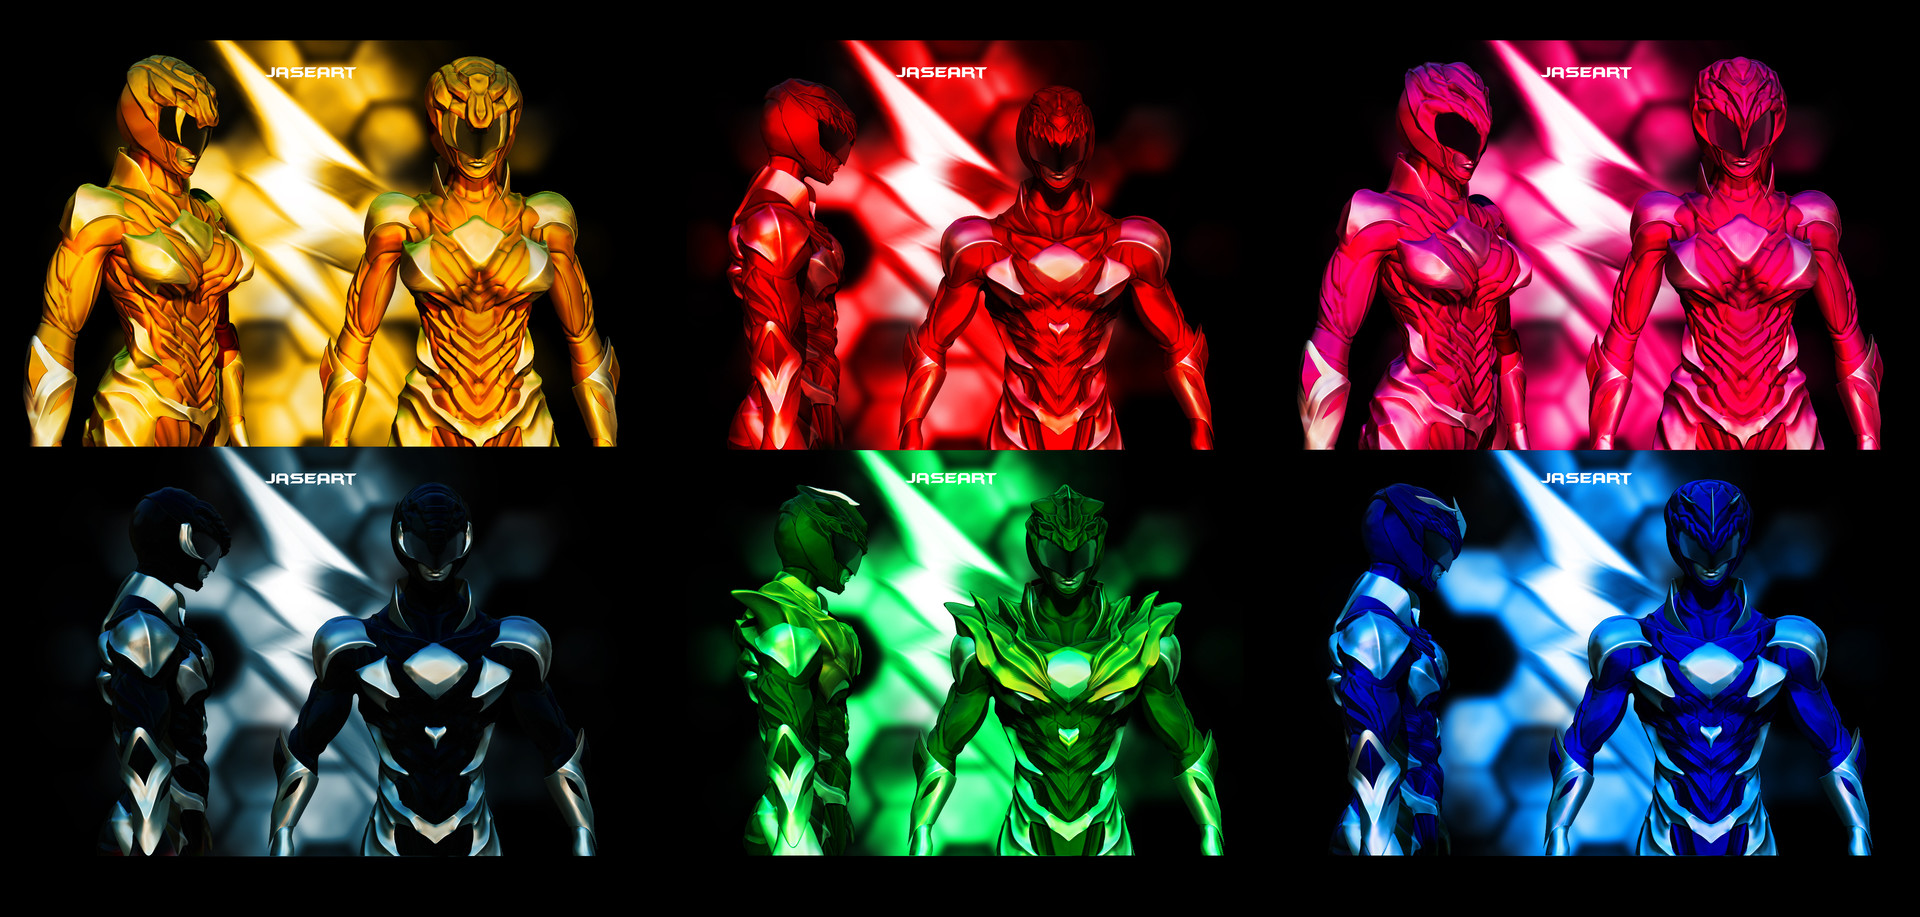 ArtStation - The Power Rangers